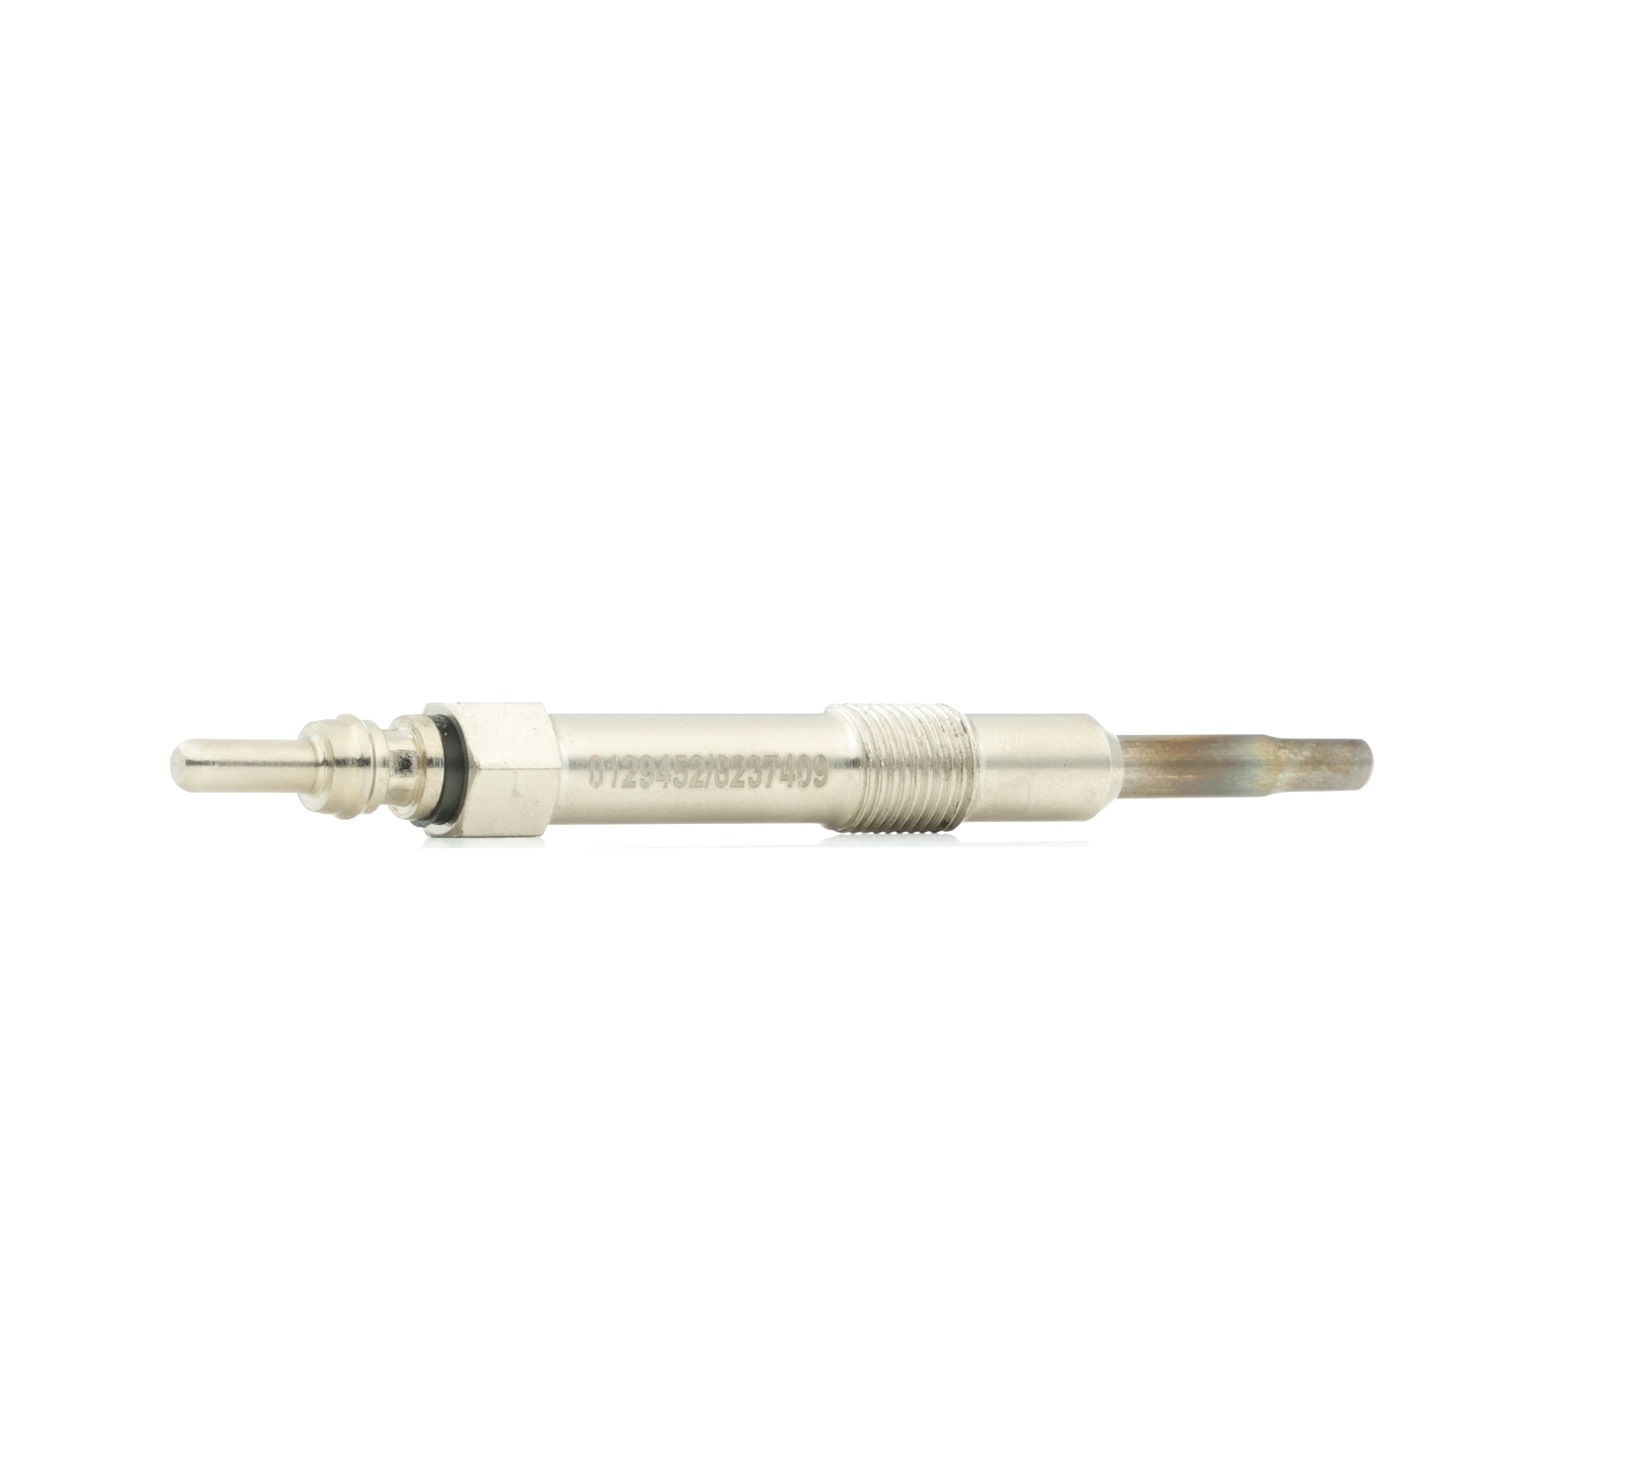 Heater plug STARK 11V, after-glow capable, Length: 103, 24 mm - SKGP-1890019